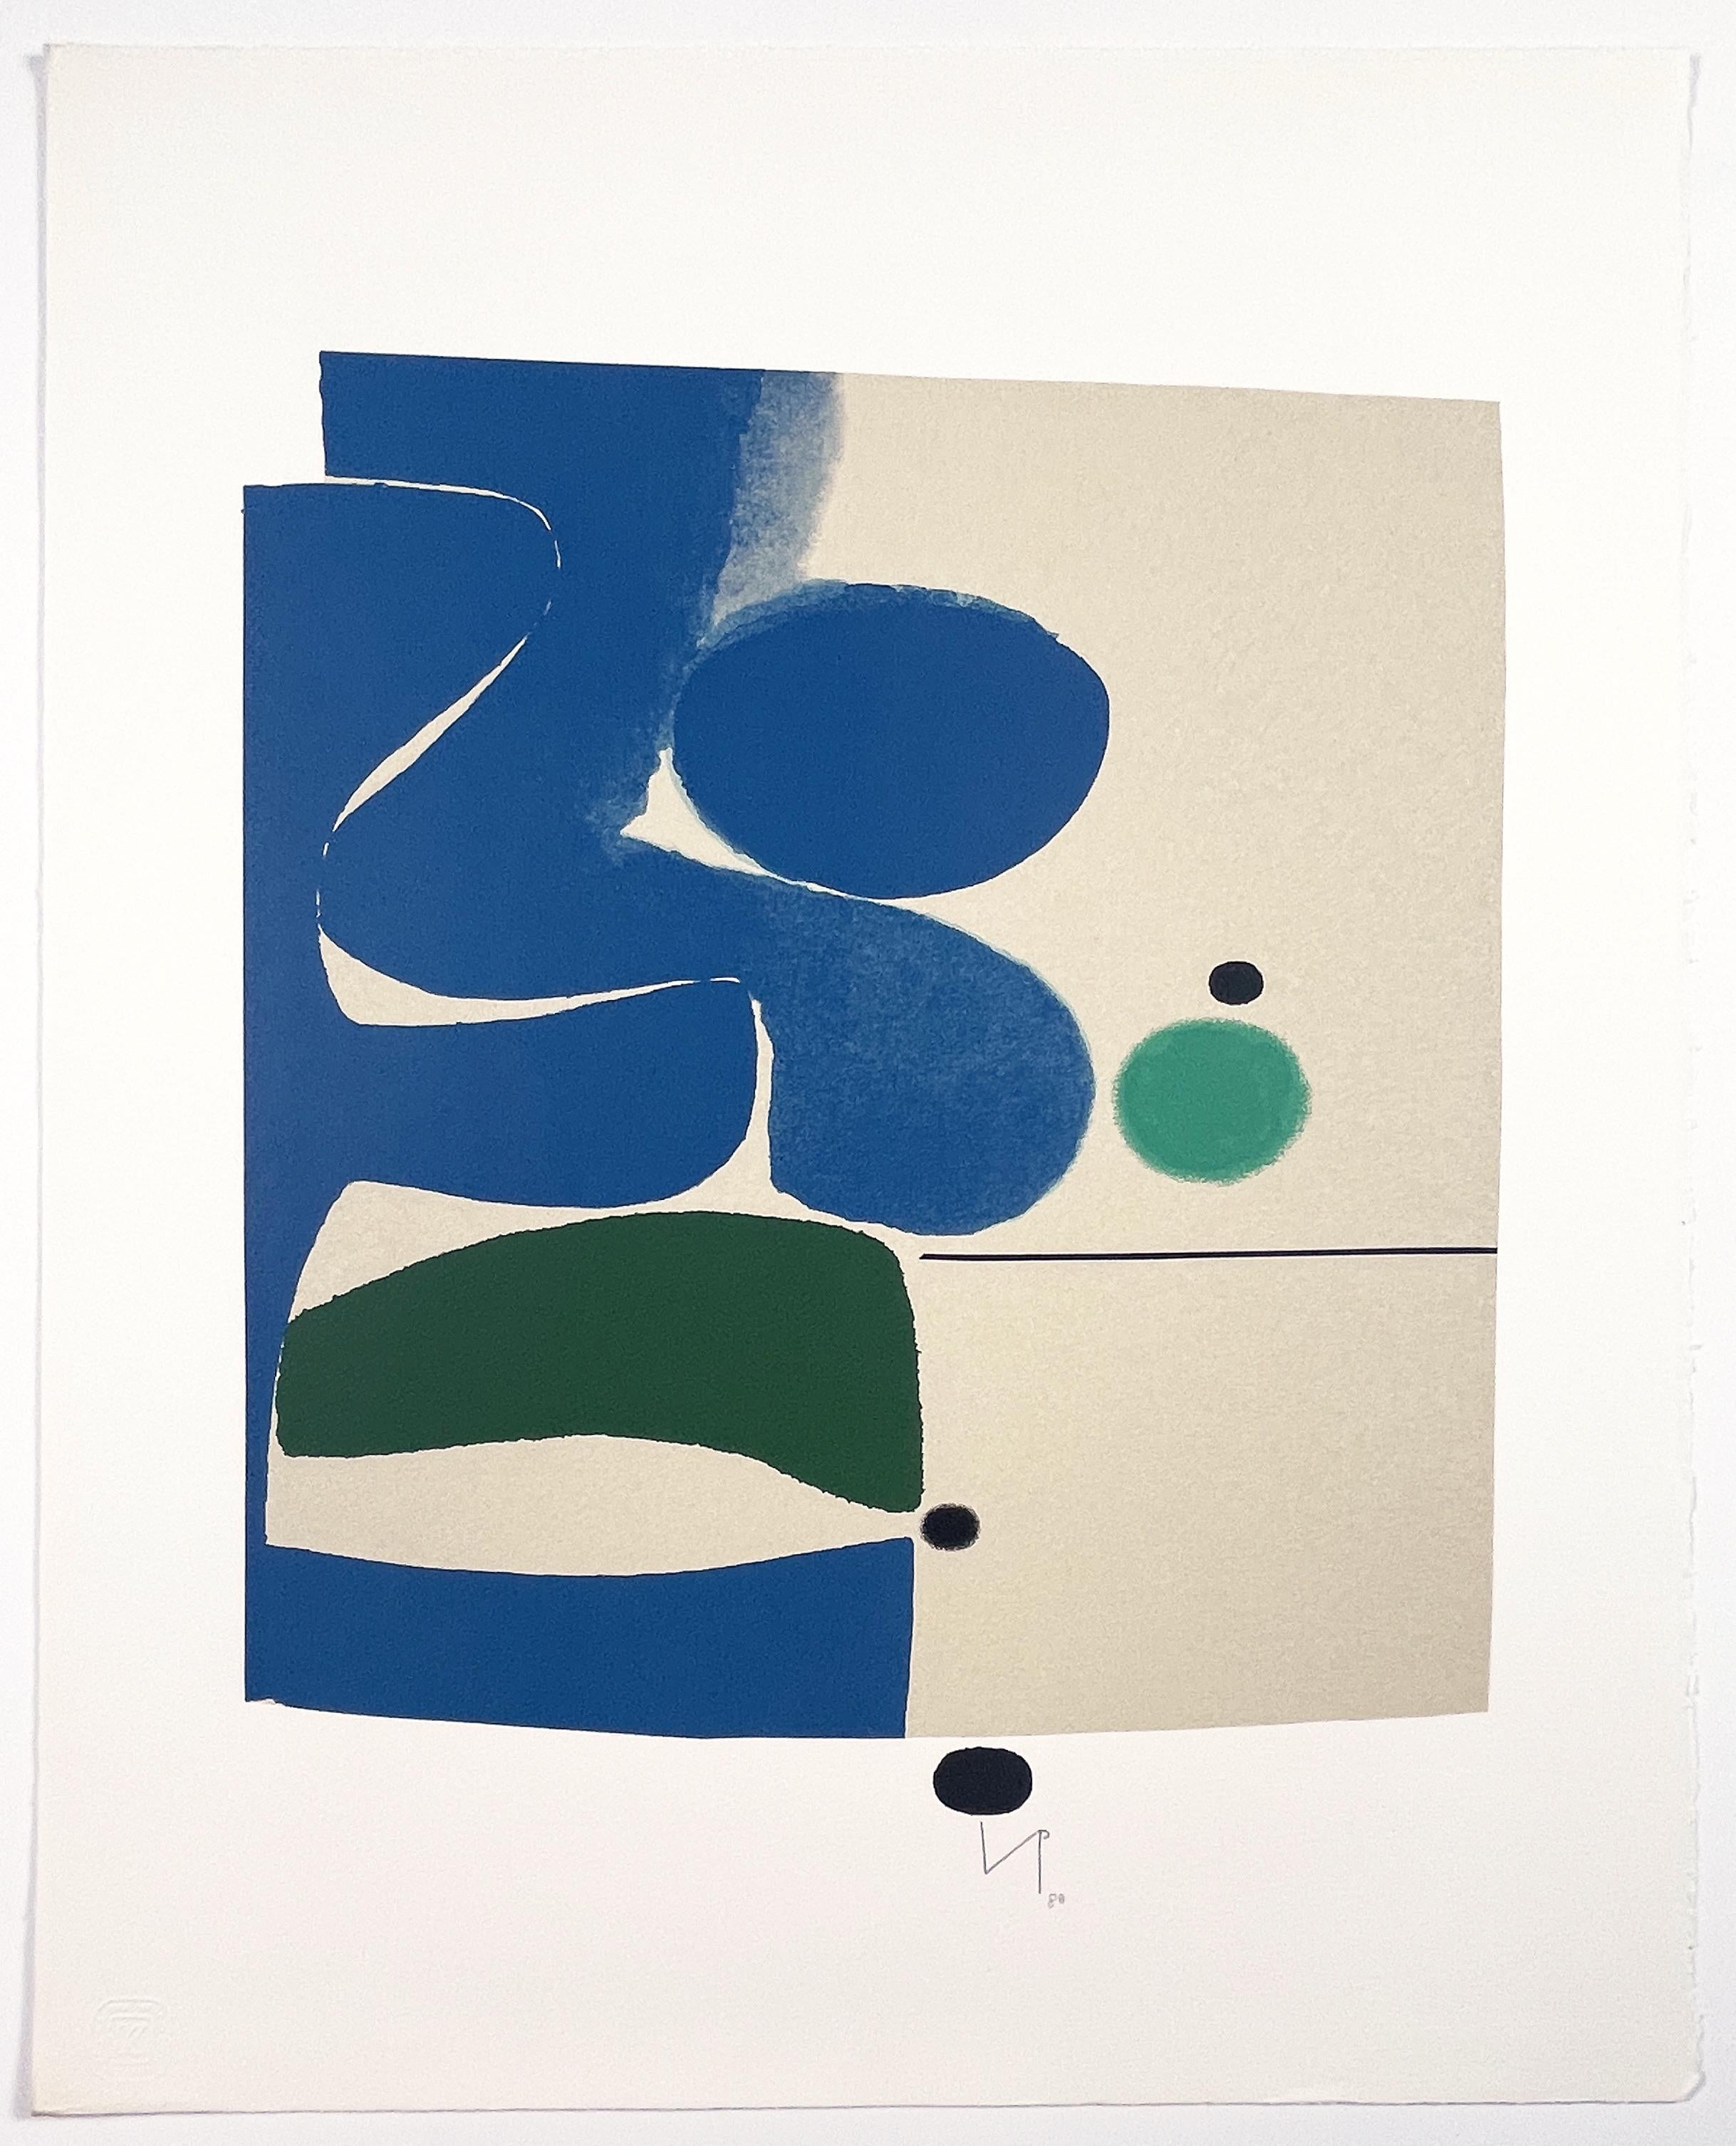 Une composition abstraite tranquille, bleue, verte et beige, de l'artiste britannique emblématique Victor Pasmore. Les formes géométriques et curvilignes sont placées harmonieusement avec une fine ligne noire et de petits cercles. Signé par